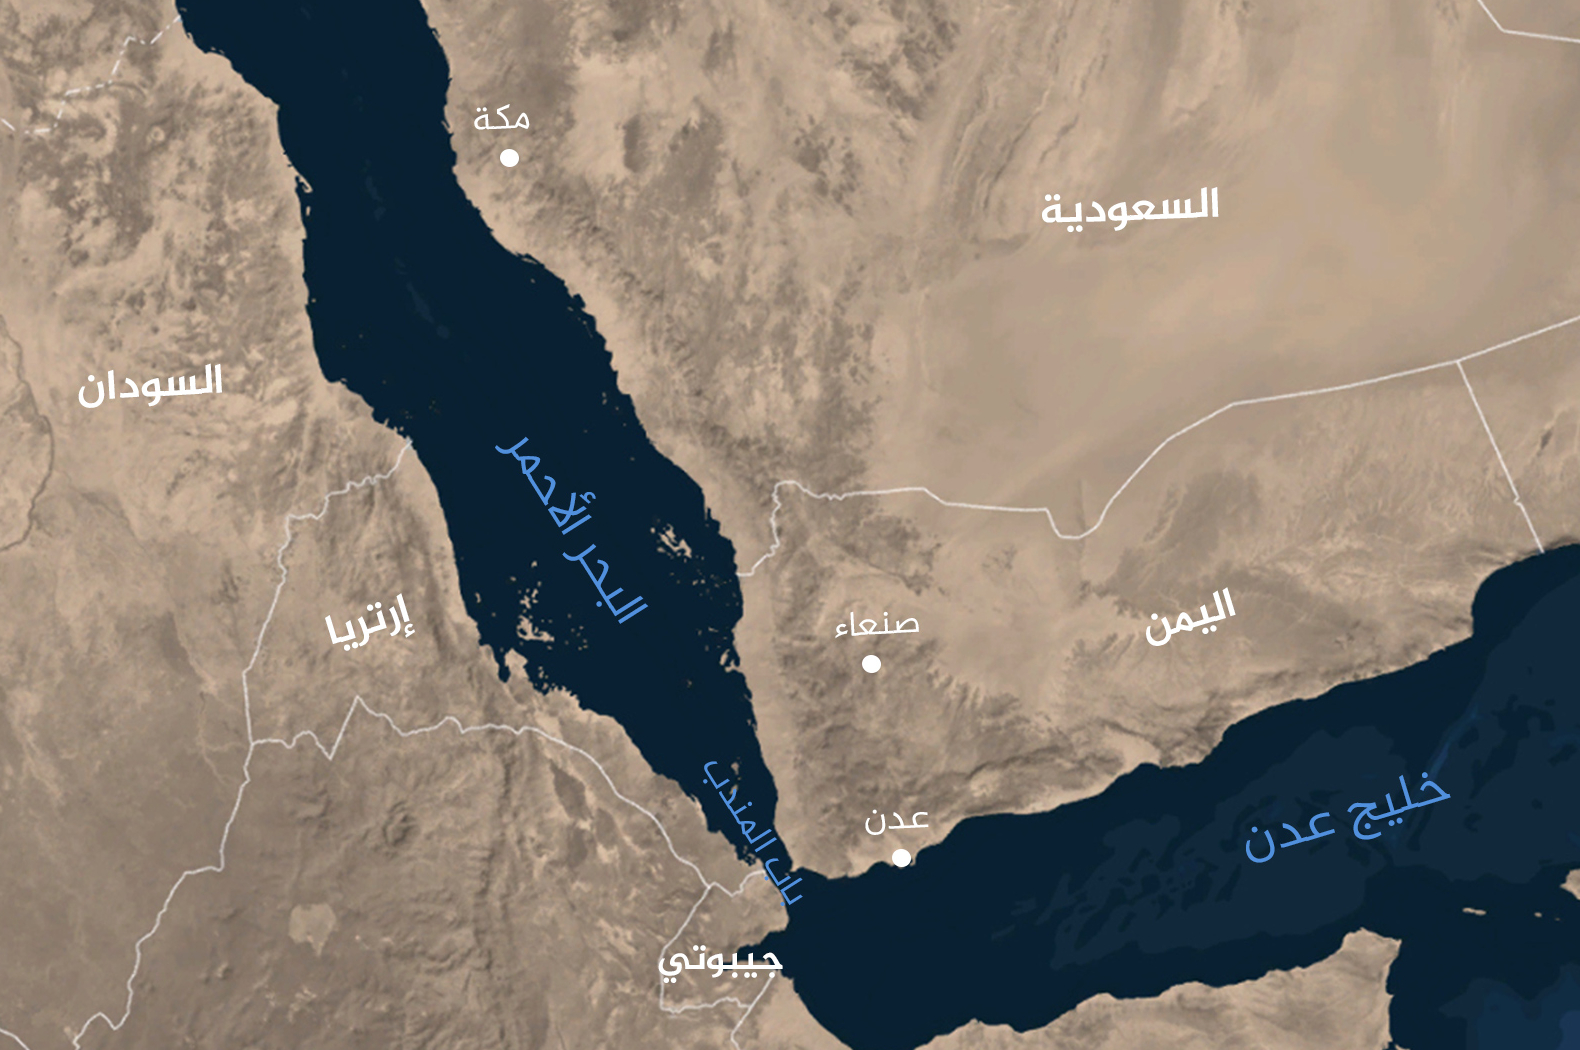 الحوثي: أمن البحر الأحمر مسؤولية الدول المشاطئة وليس الولايات المتحدة